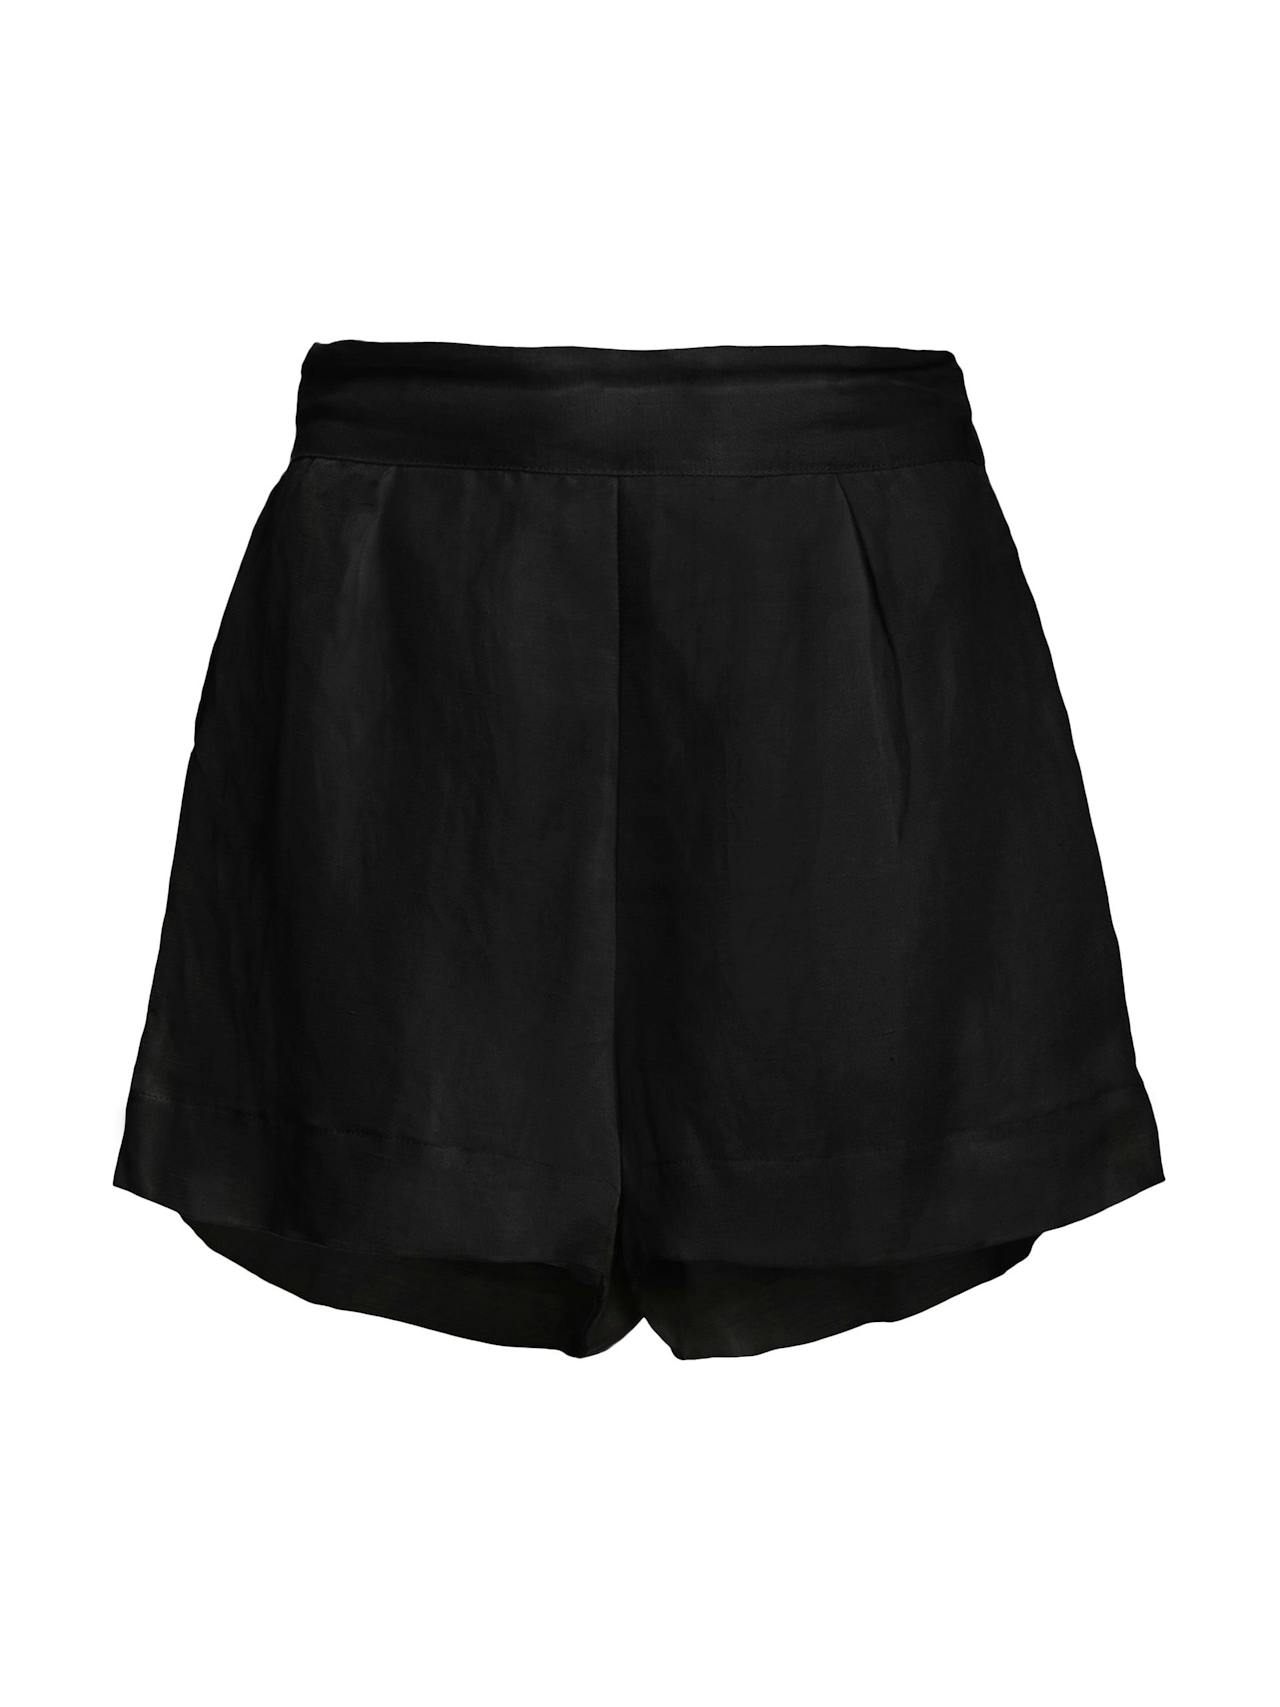 The High-Waist Short Short in linen cupro